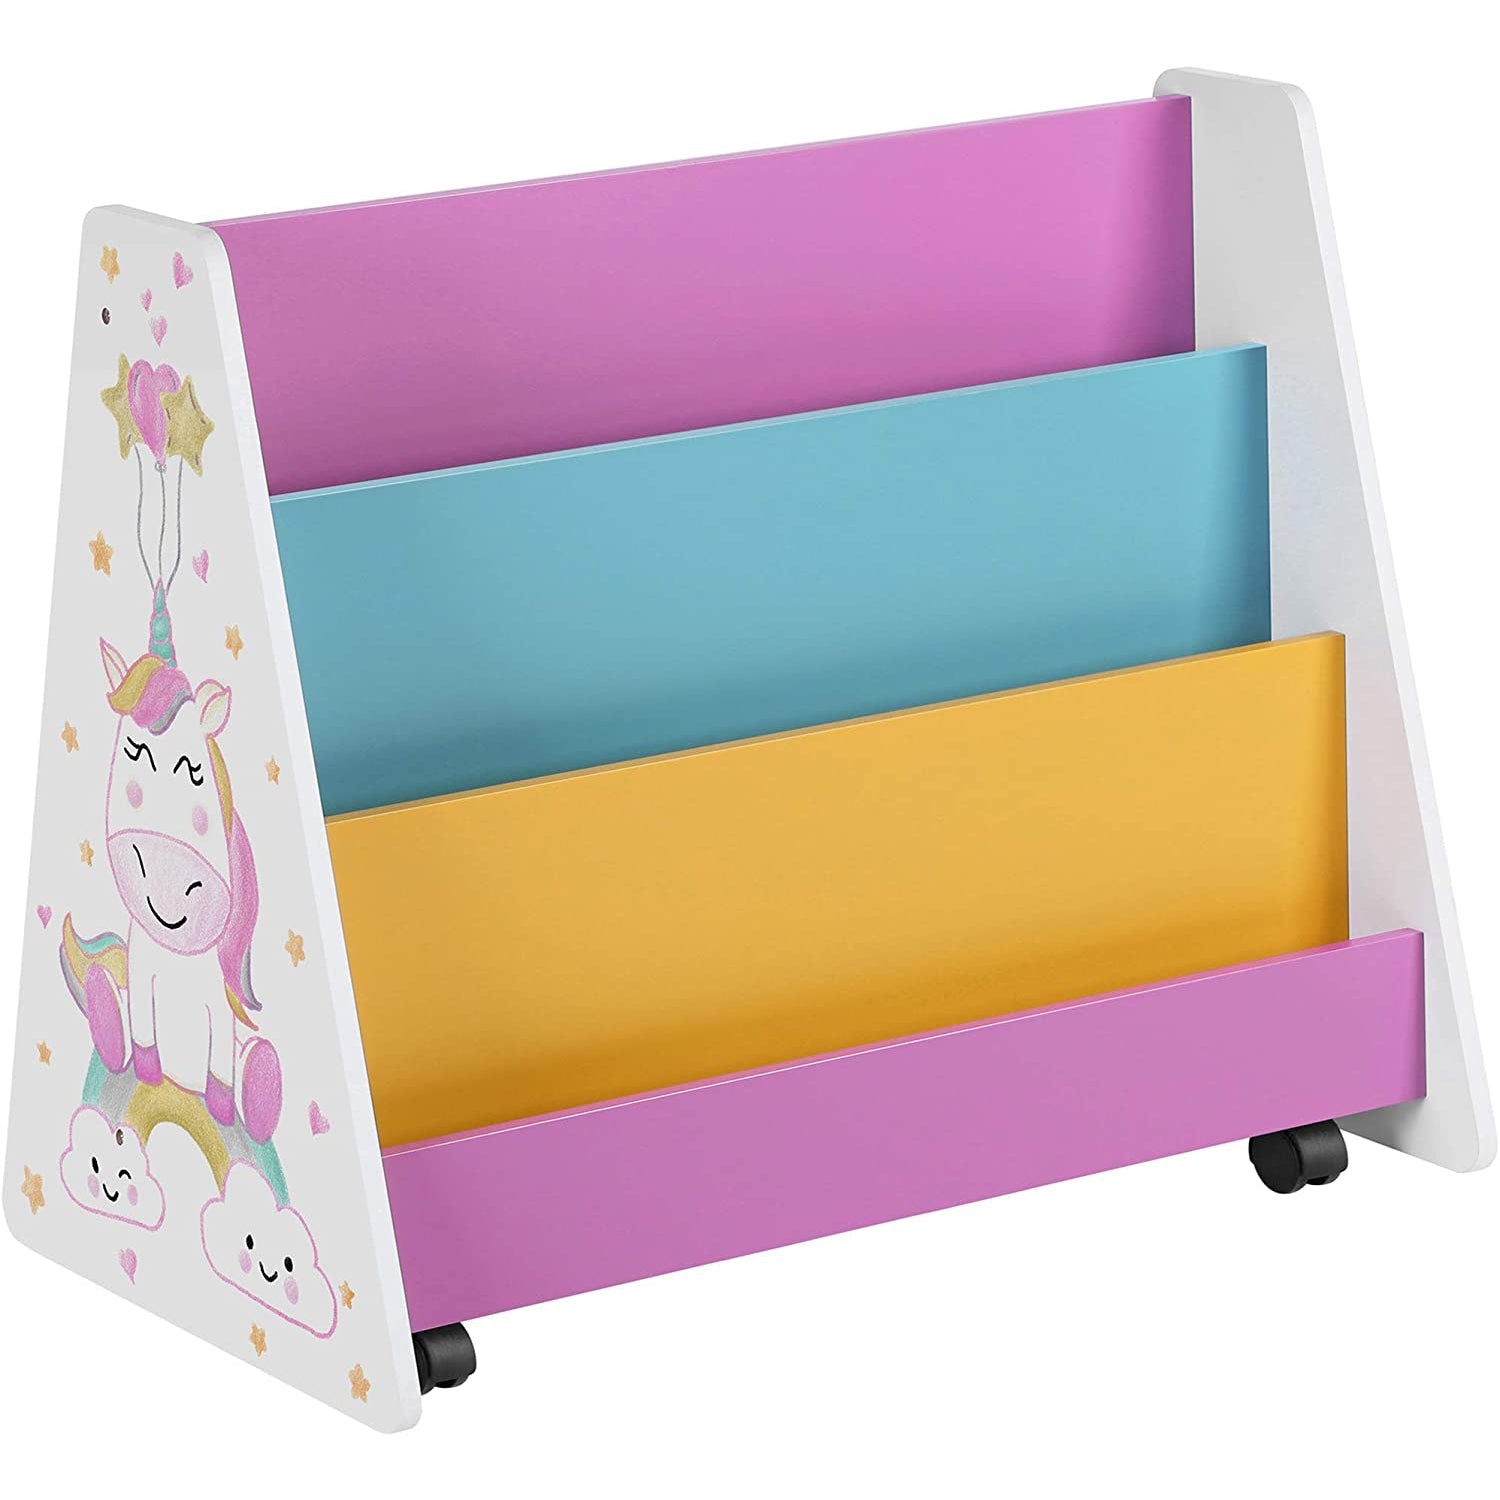 Nancy's Kinderboekenrek - Boekenorganizer - Op Wieltjes - Boekenkast Voor Kinderen - Kinderkamer - Wit Blauw Roze Geel Zwart - Krijtbord